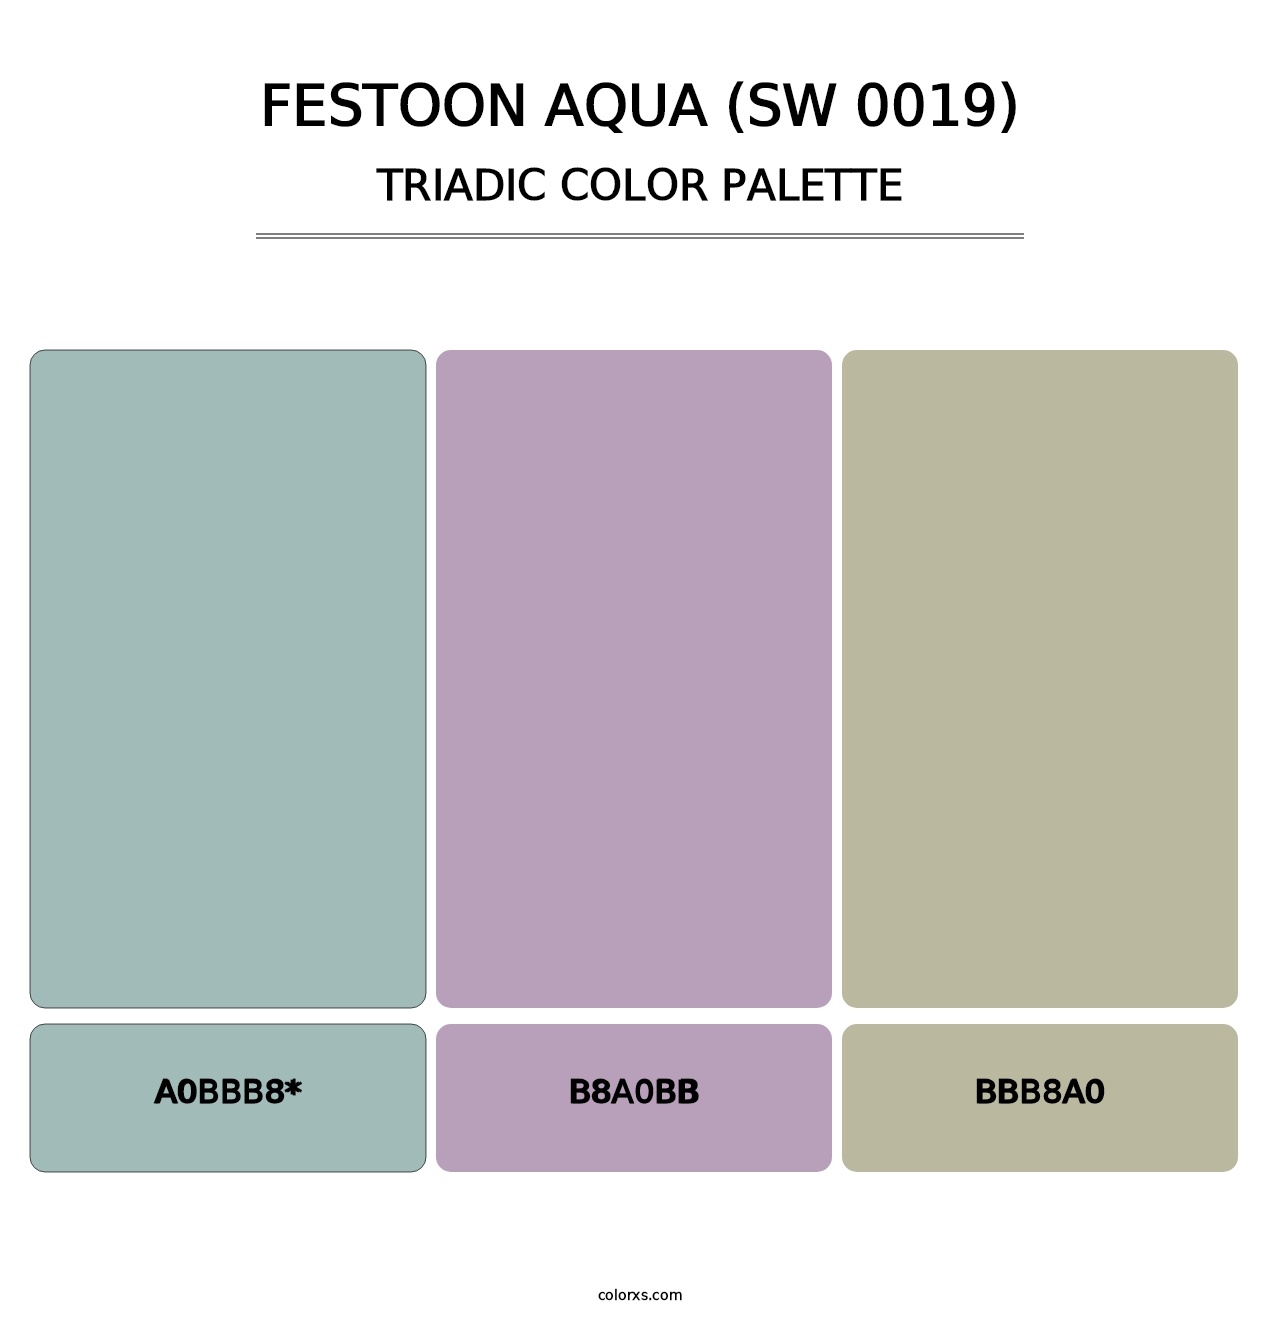 Festoon Aqua (SW 0019) - Triadic Color Palette